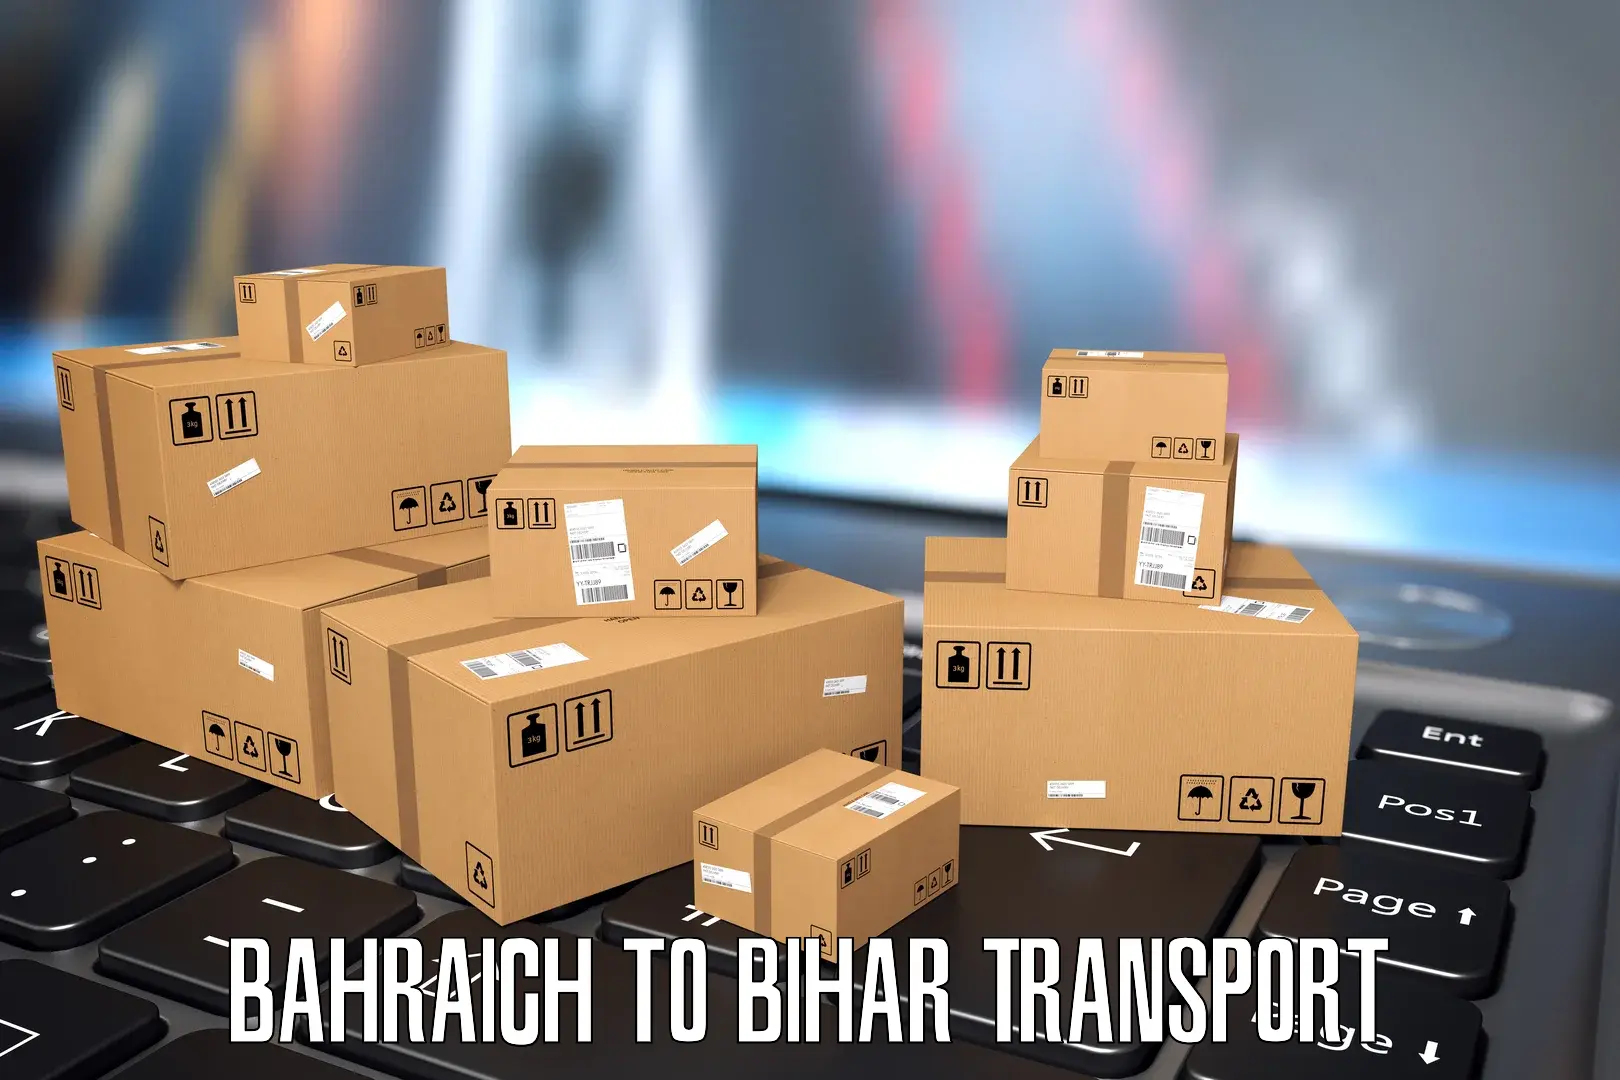 Road transport services Bahraich to Bettiah